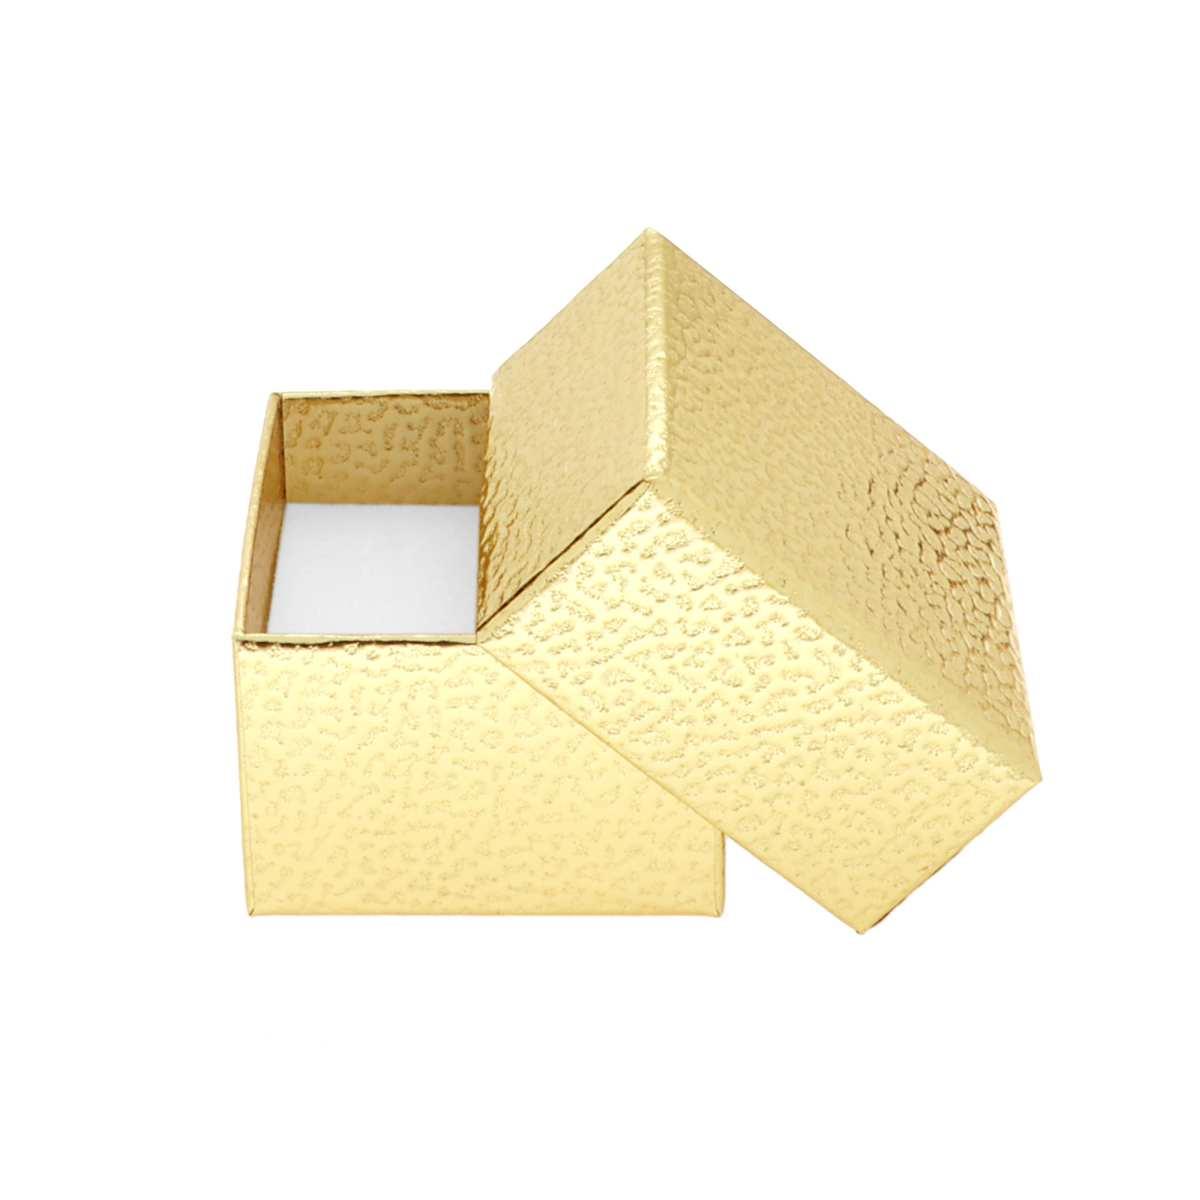 Astuccio multiuso per Gioielli cm 5,5 x 5,5 h 3,8 colore Oro Glitter con nastro e fiocco Oro con Shopper inclusa